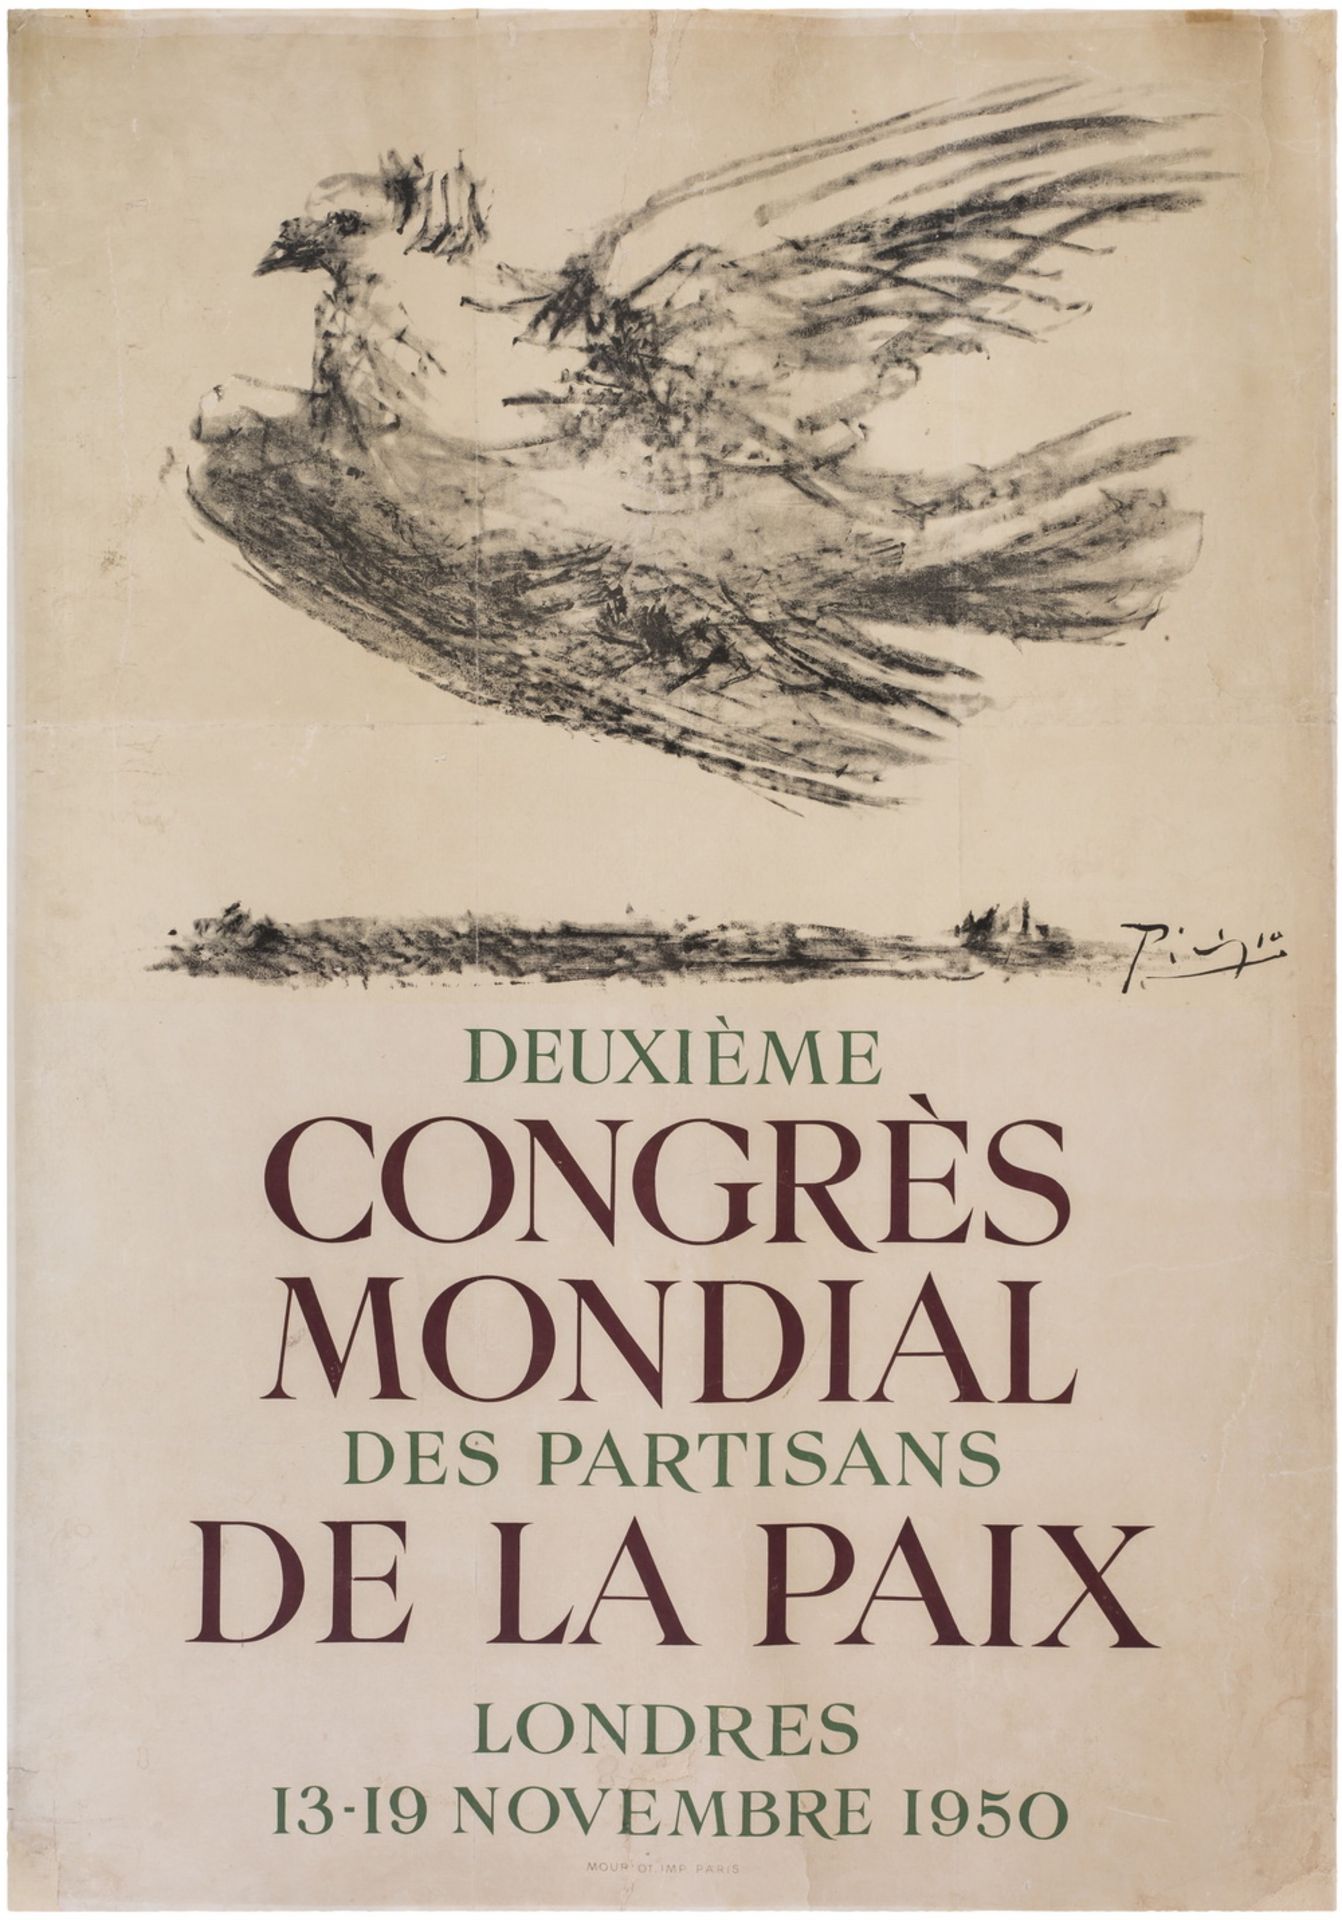 [Soviet art]. Pablo Picasso. Poster "Deuxieme congres mondial des partisans de la paix. Londres". - 